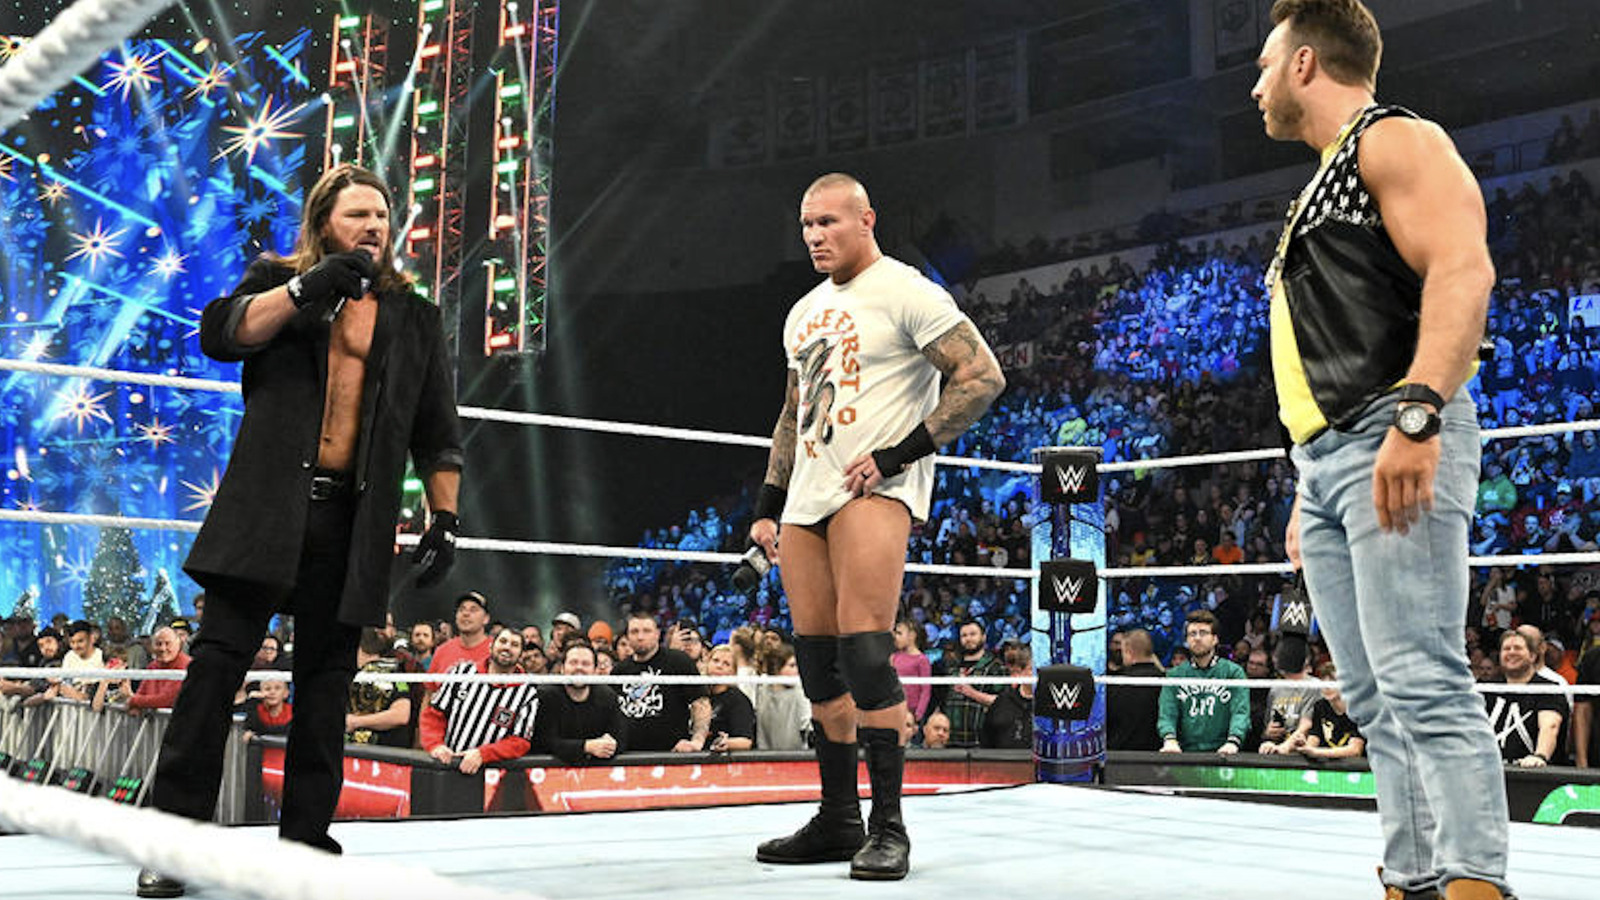 Cobertura en vivo de WWE SmackDown 1/19